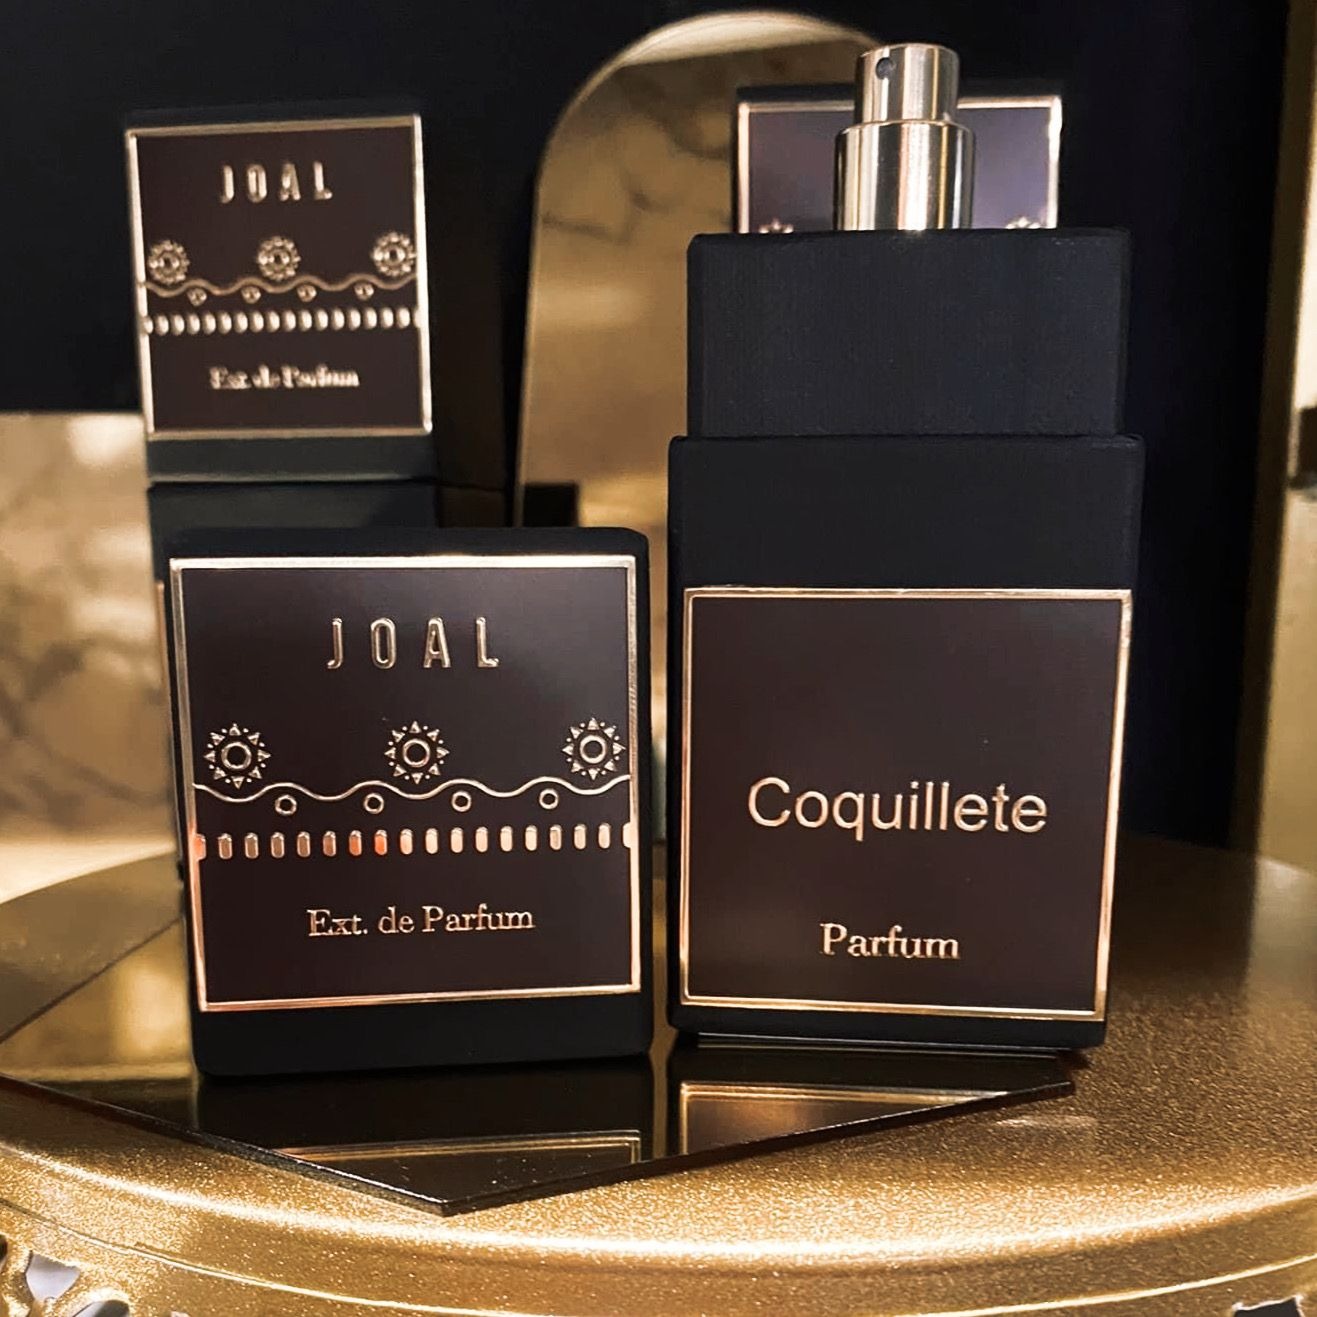 Joal: la limited edition 2016 è ora tra le capsule collection Coquillete Parfum con una formula rinnovata, ancora più coinvolgente.